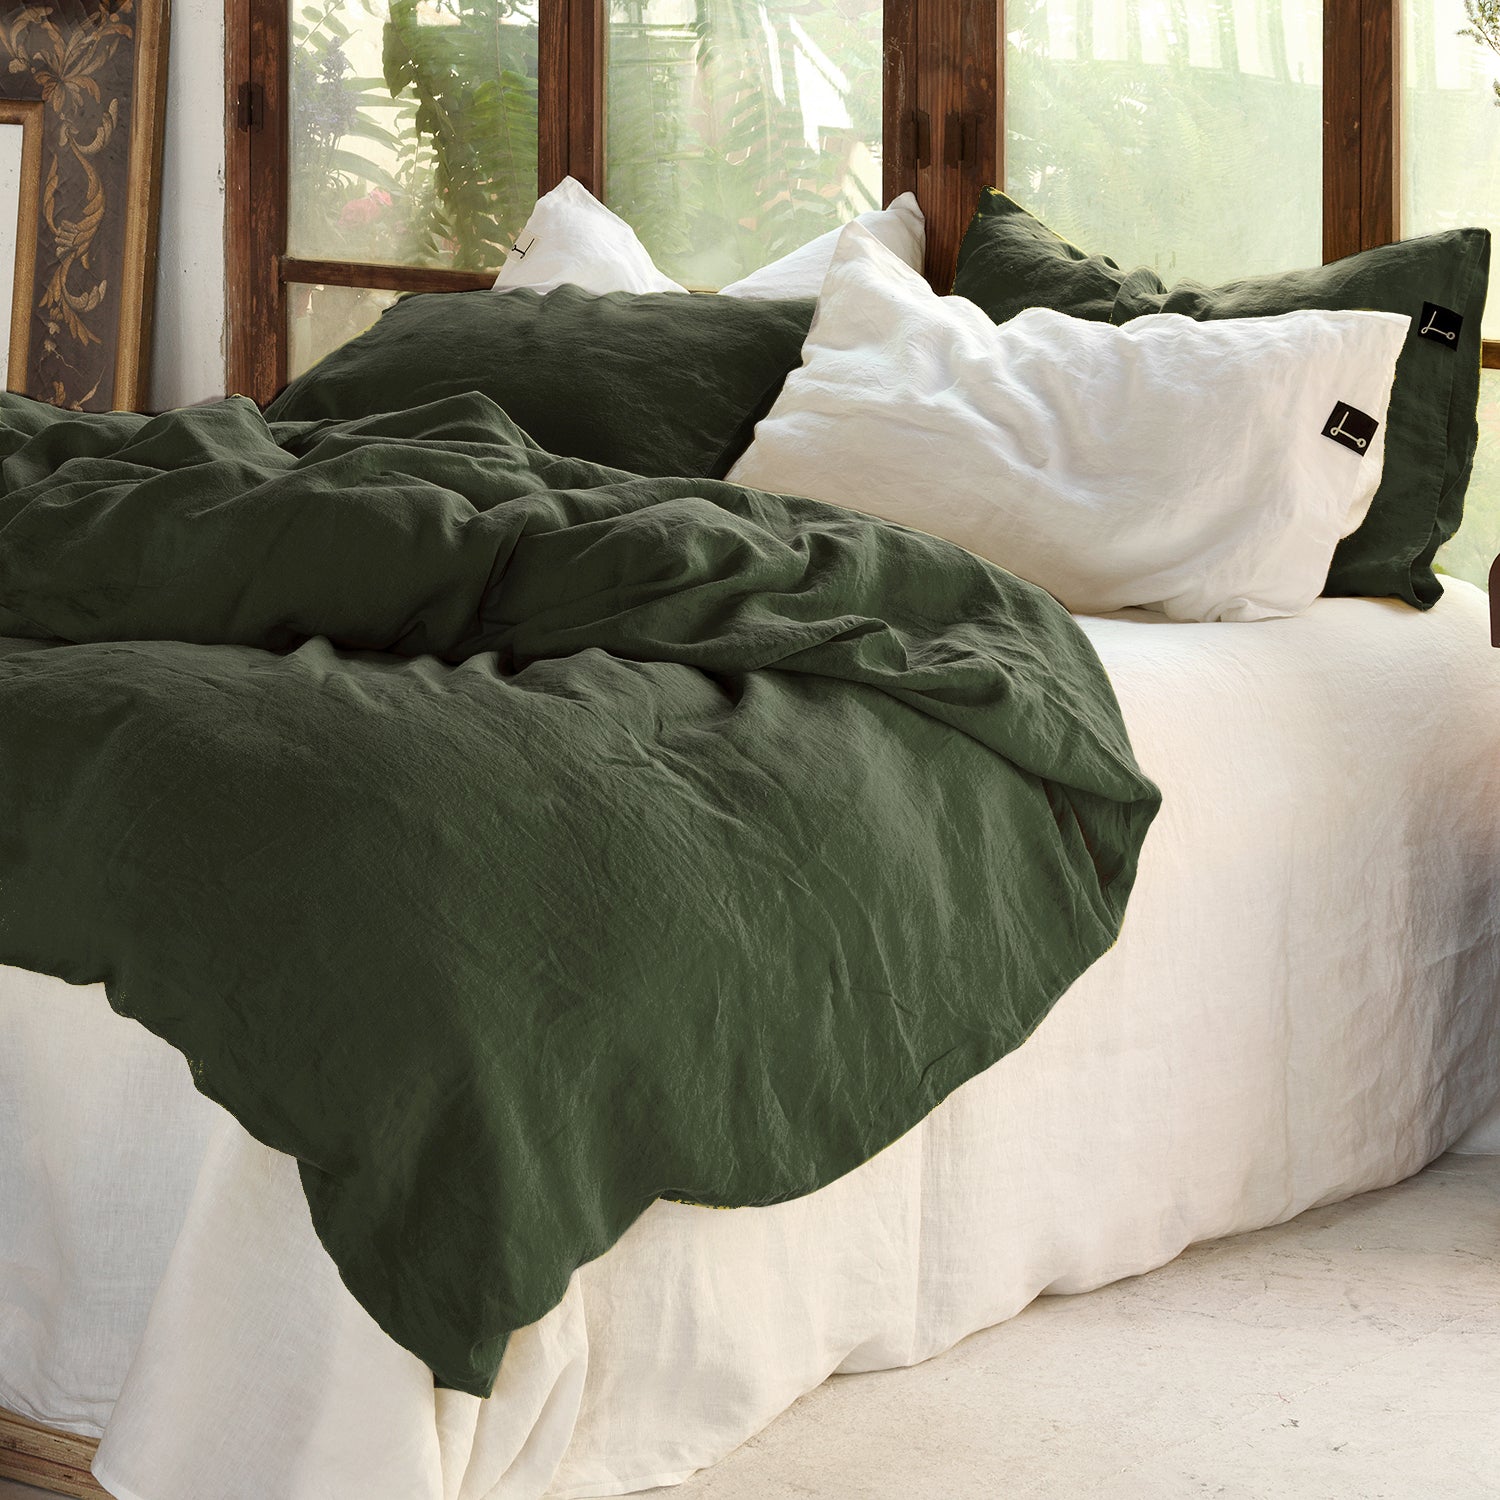 Funda nórdica de lino verde oscuro en cama con sábana blanca.